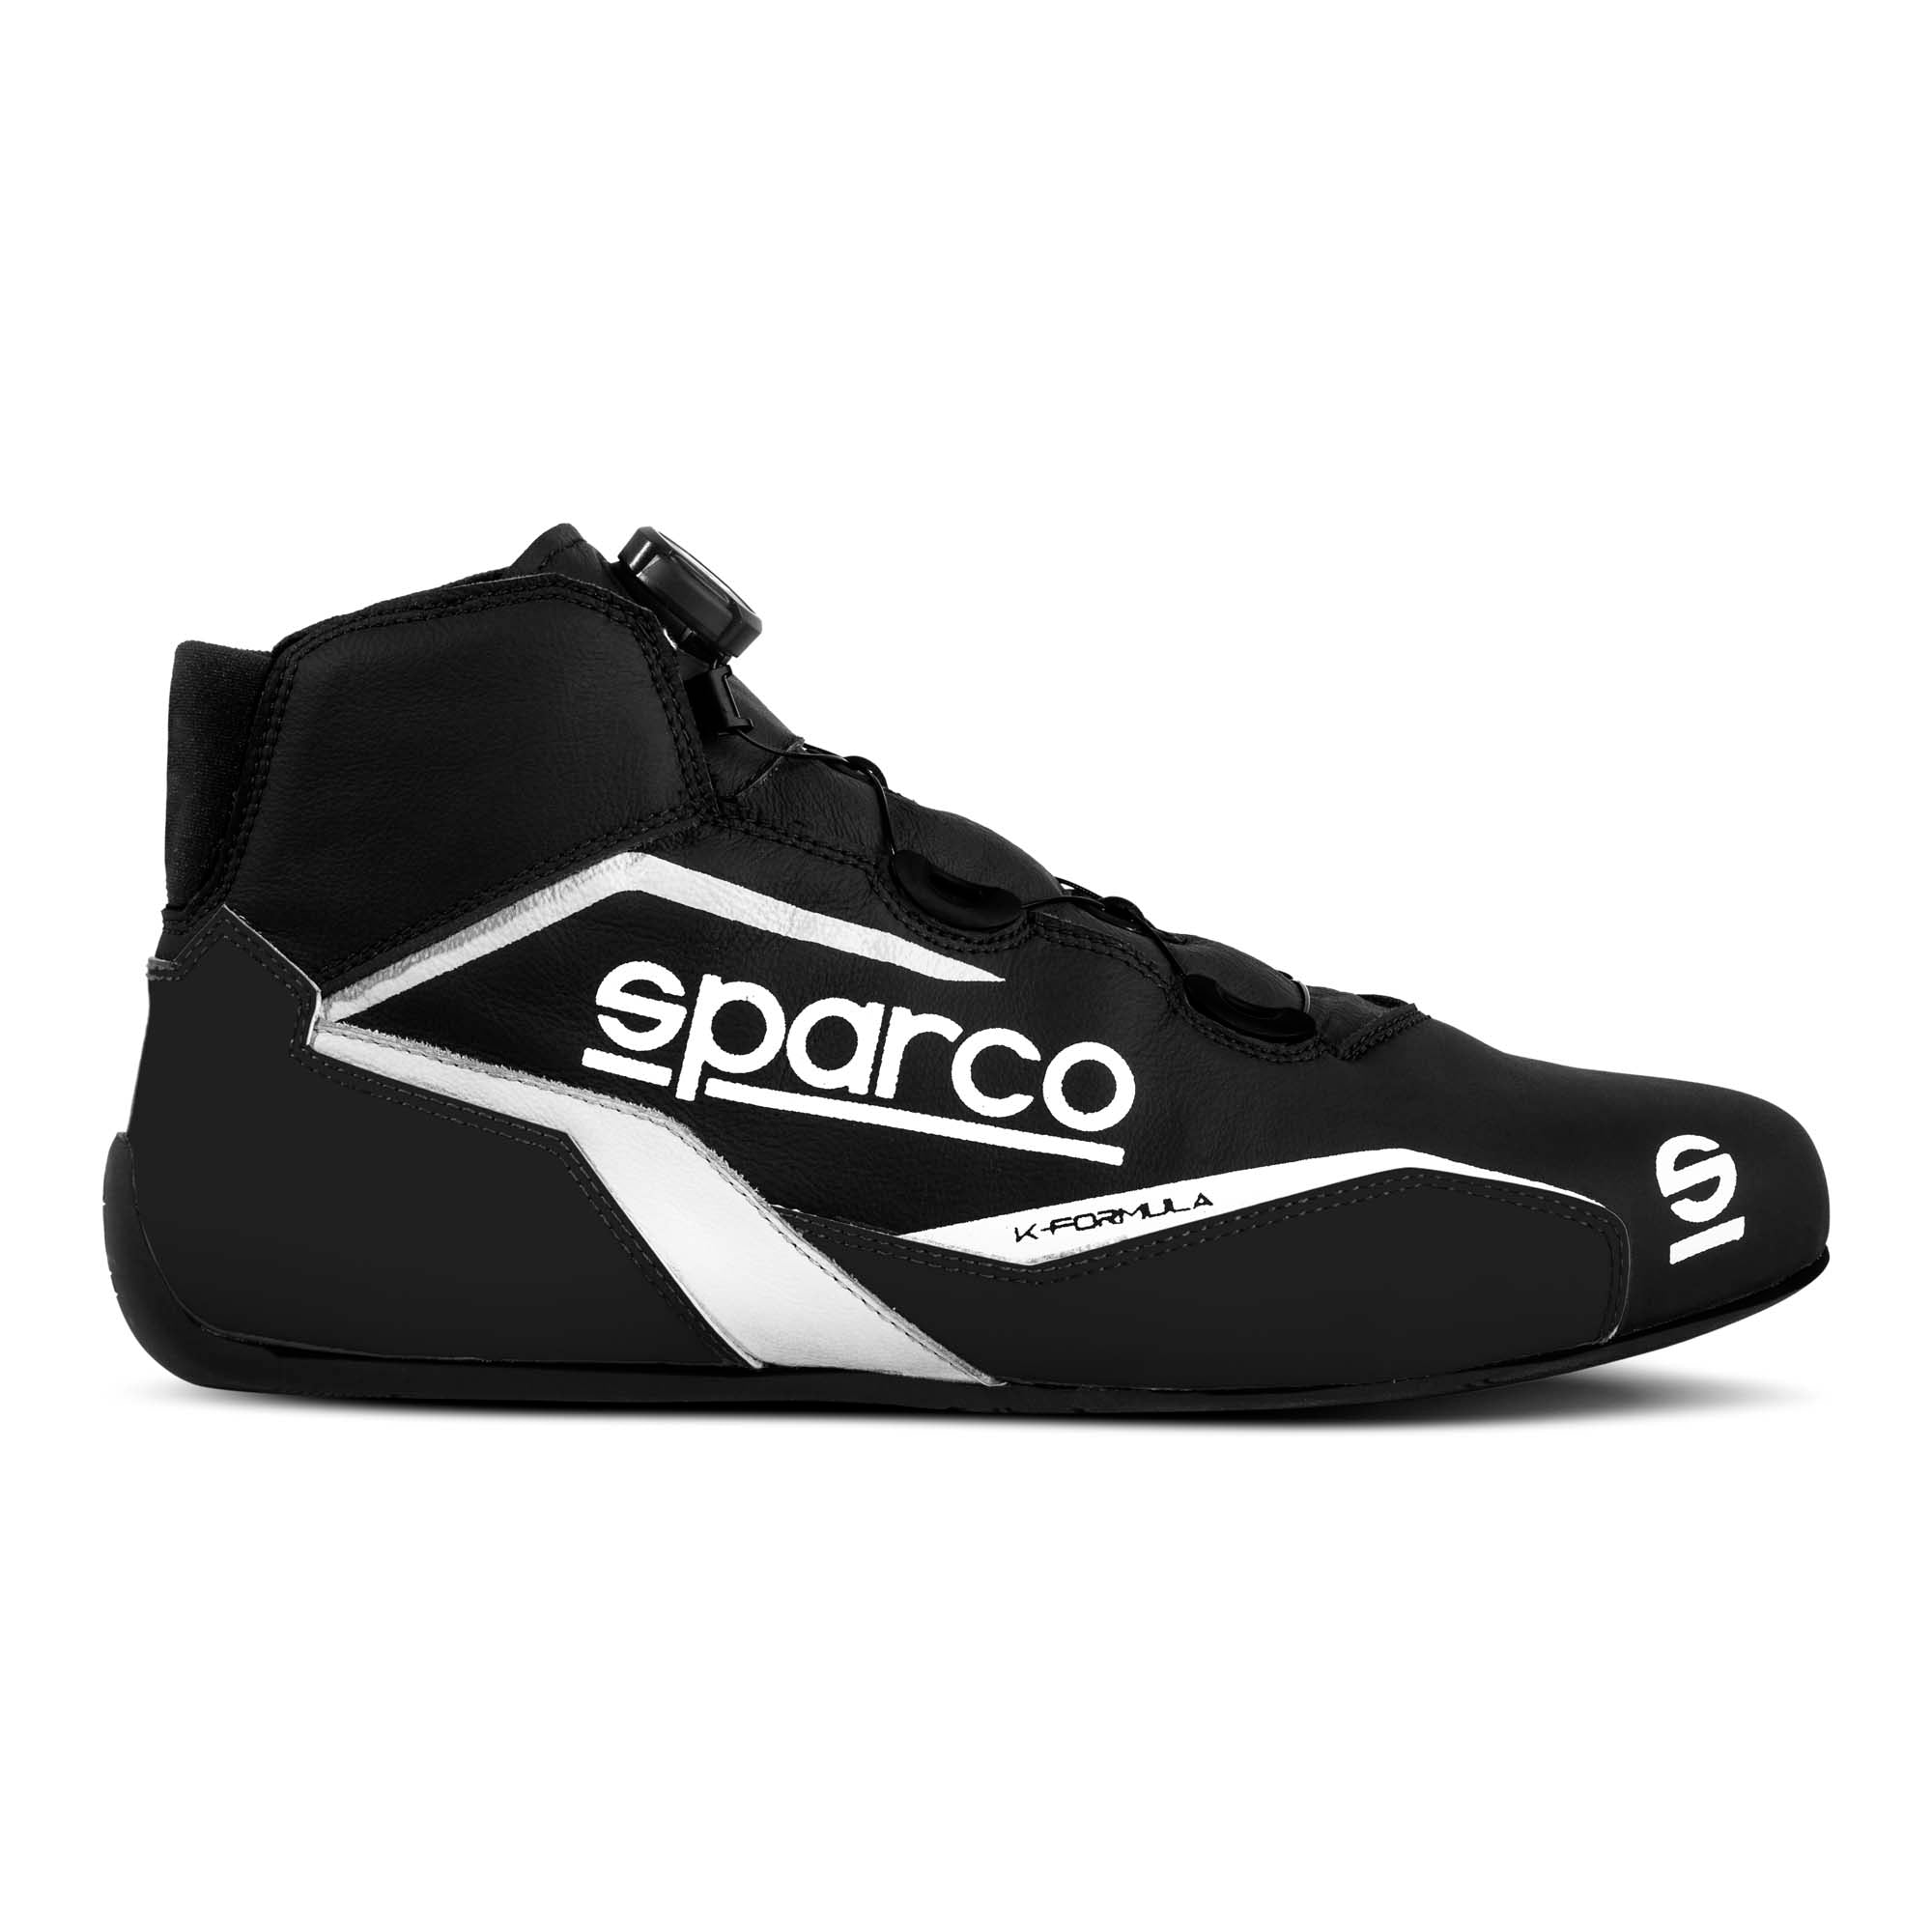 Sparco Omega KB-6 Karting Shoes